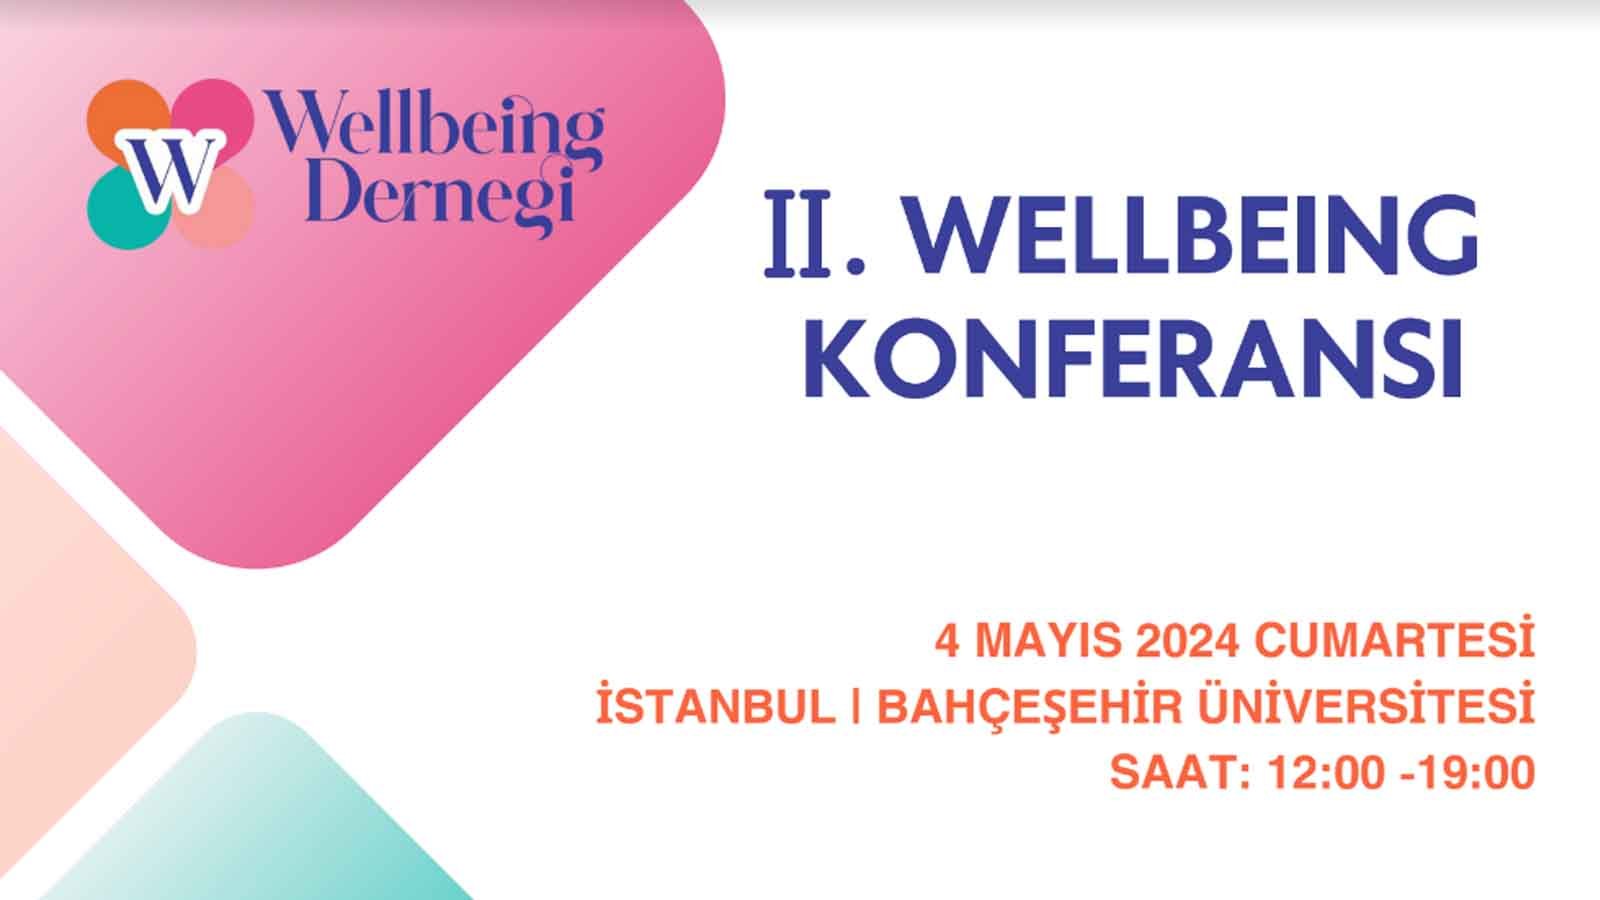 Sağlık Ve Mutluluk Arayışında İstanbul'da Ii. Wellbeing Konferansı Başlıyor!